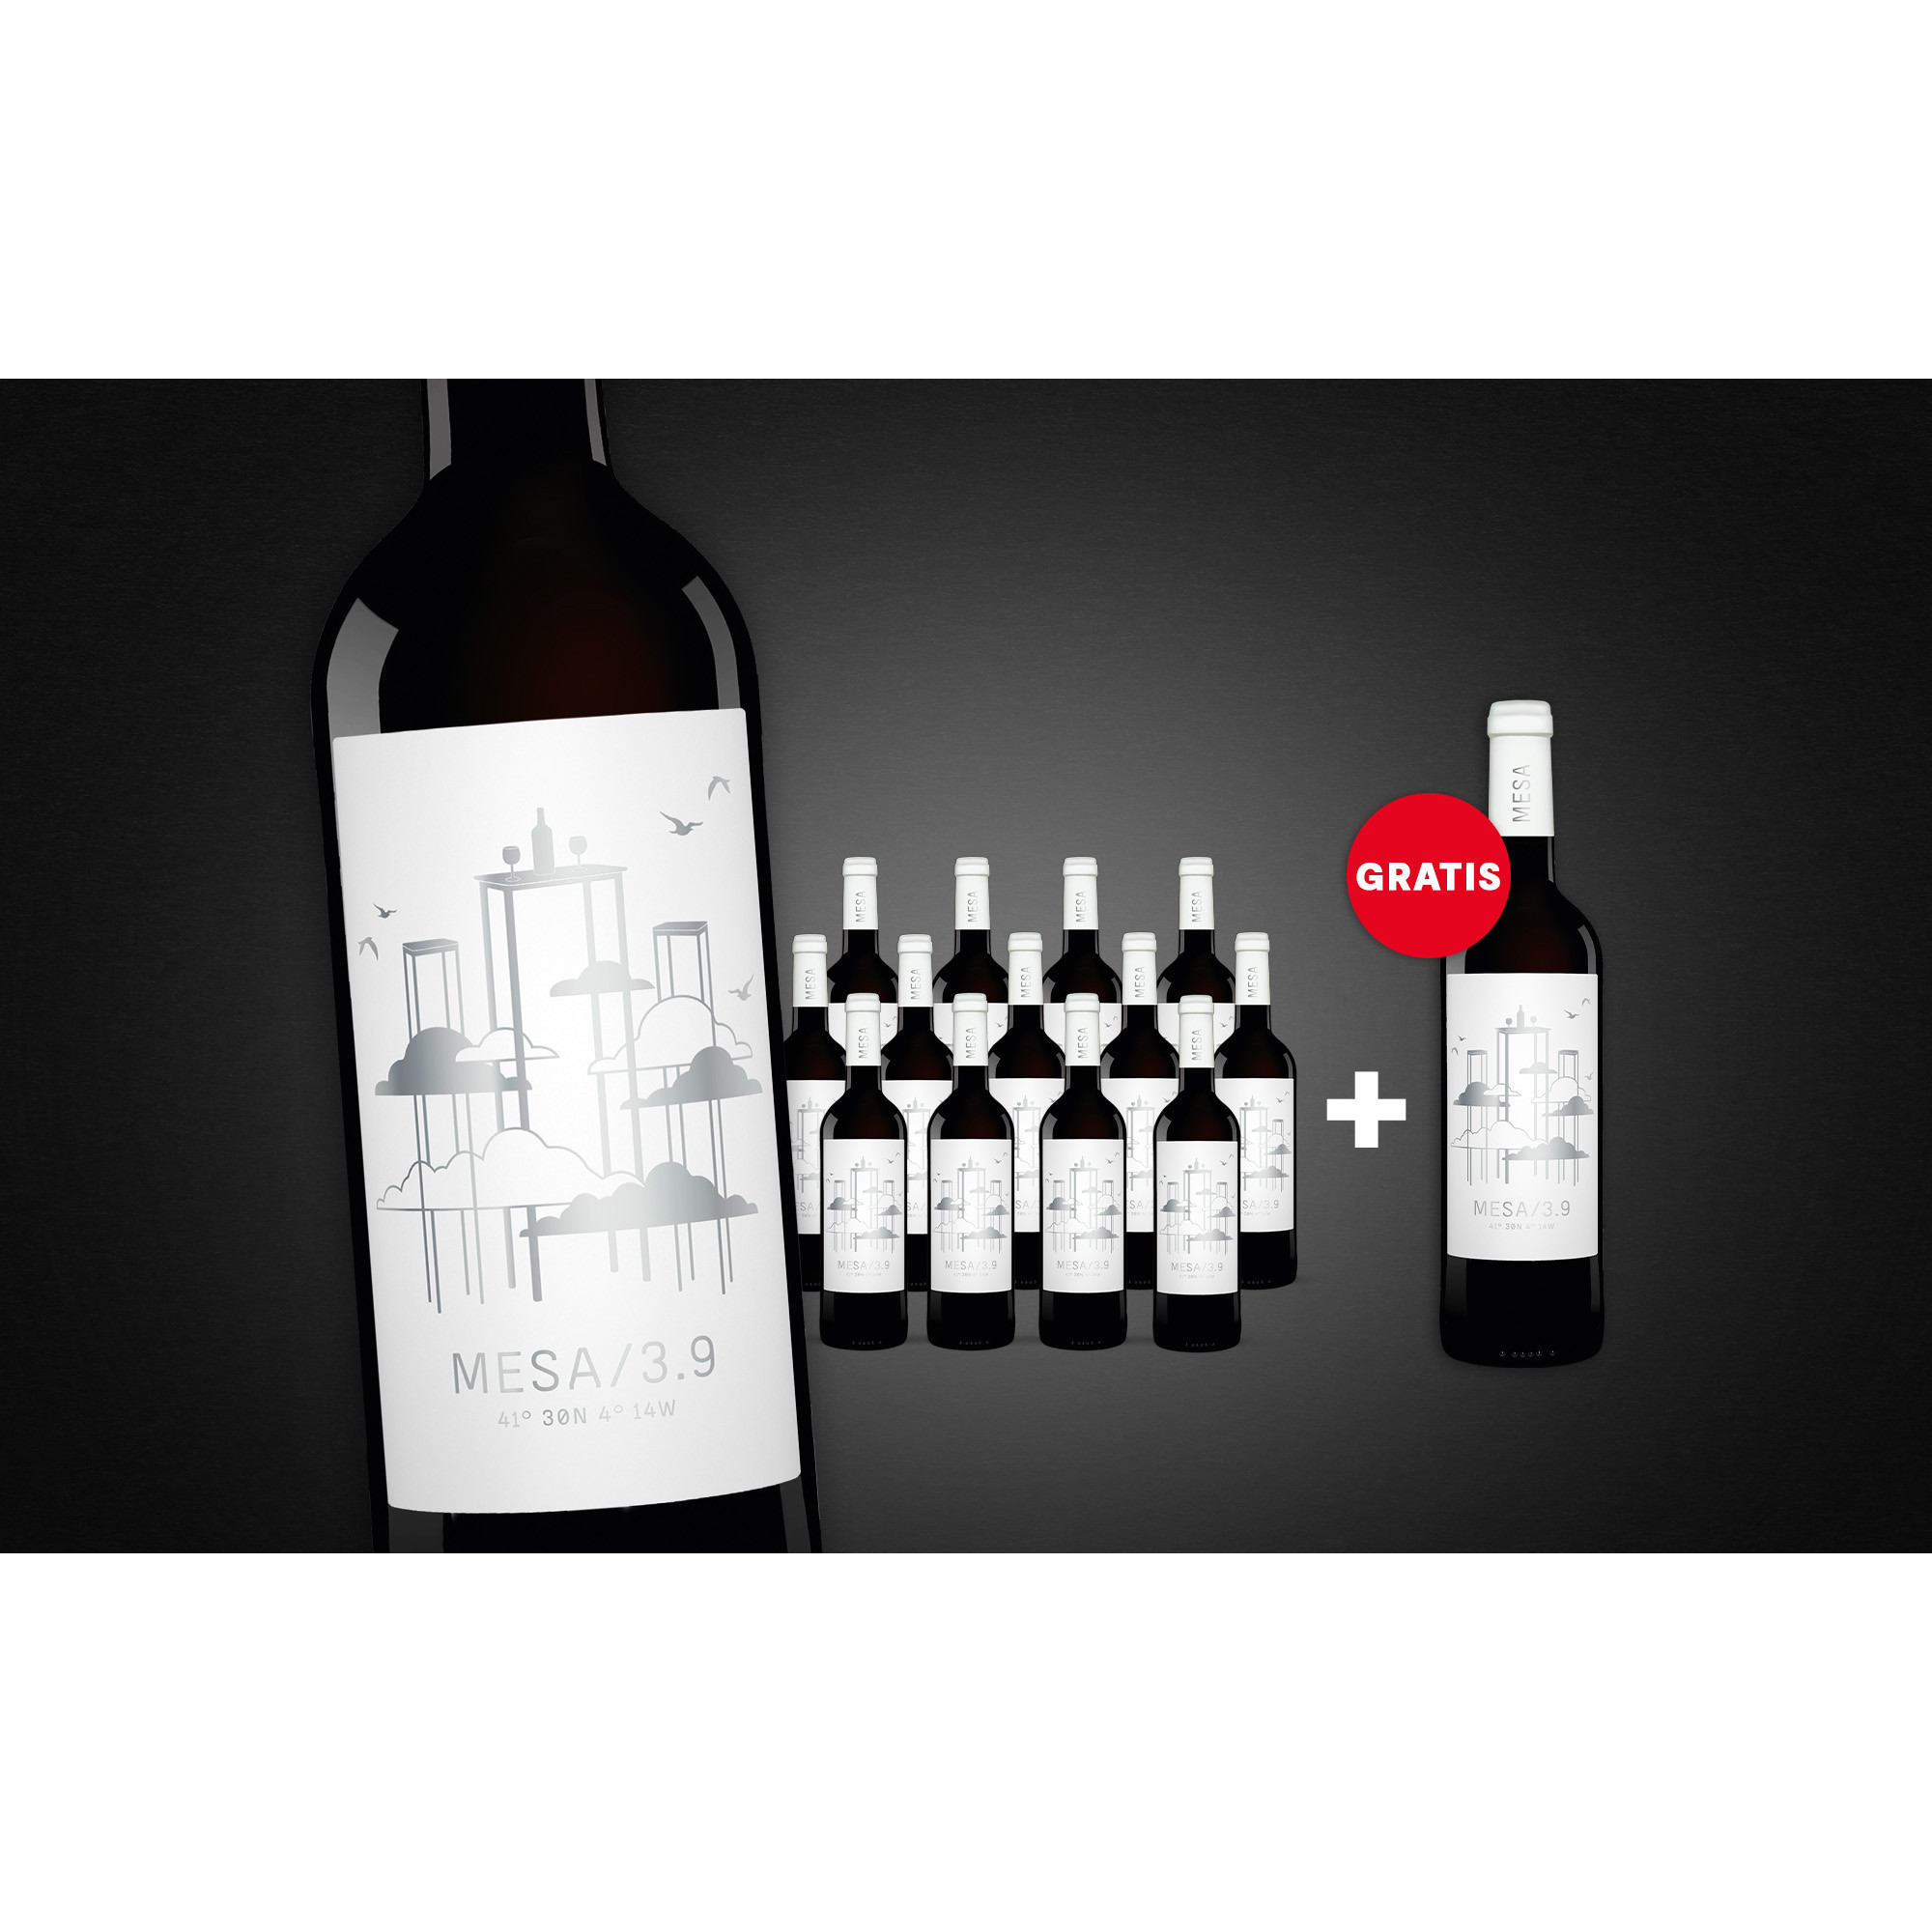 MESA/3.9  11.25L 13.5% Vol. Trocken Weinpaket aus Spanien 34491 vinos DE